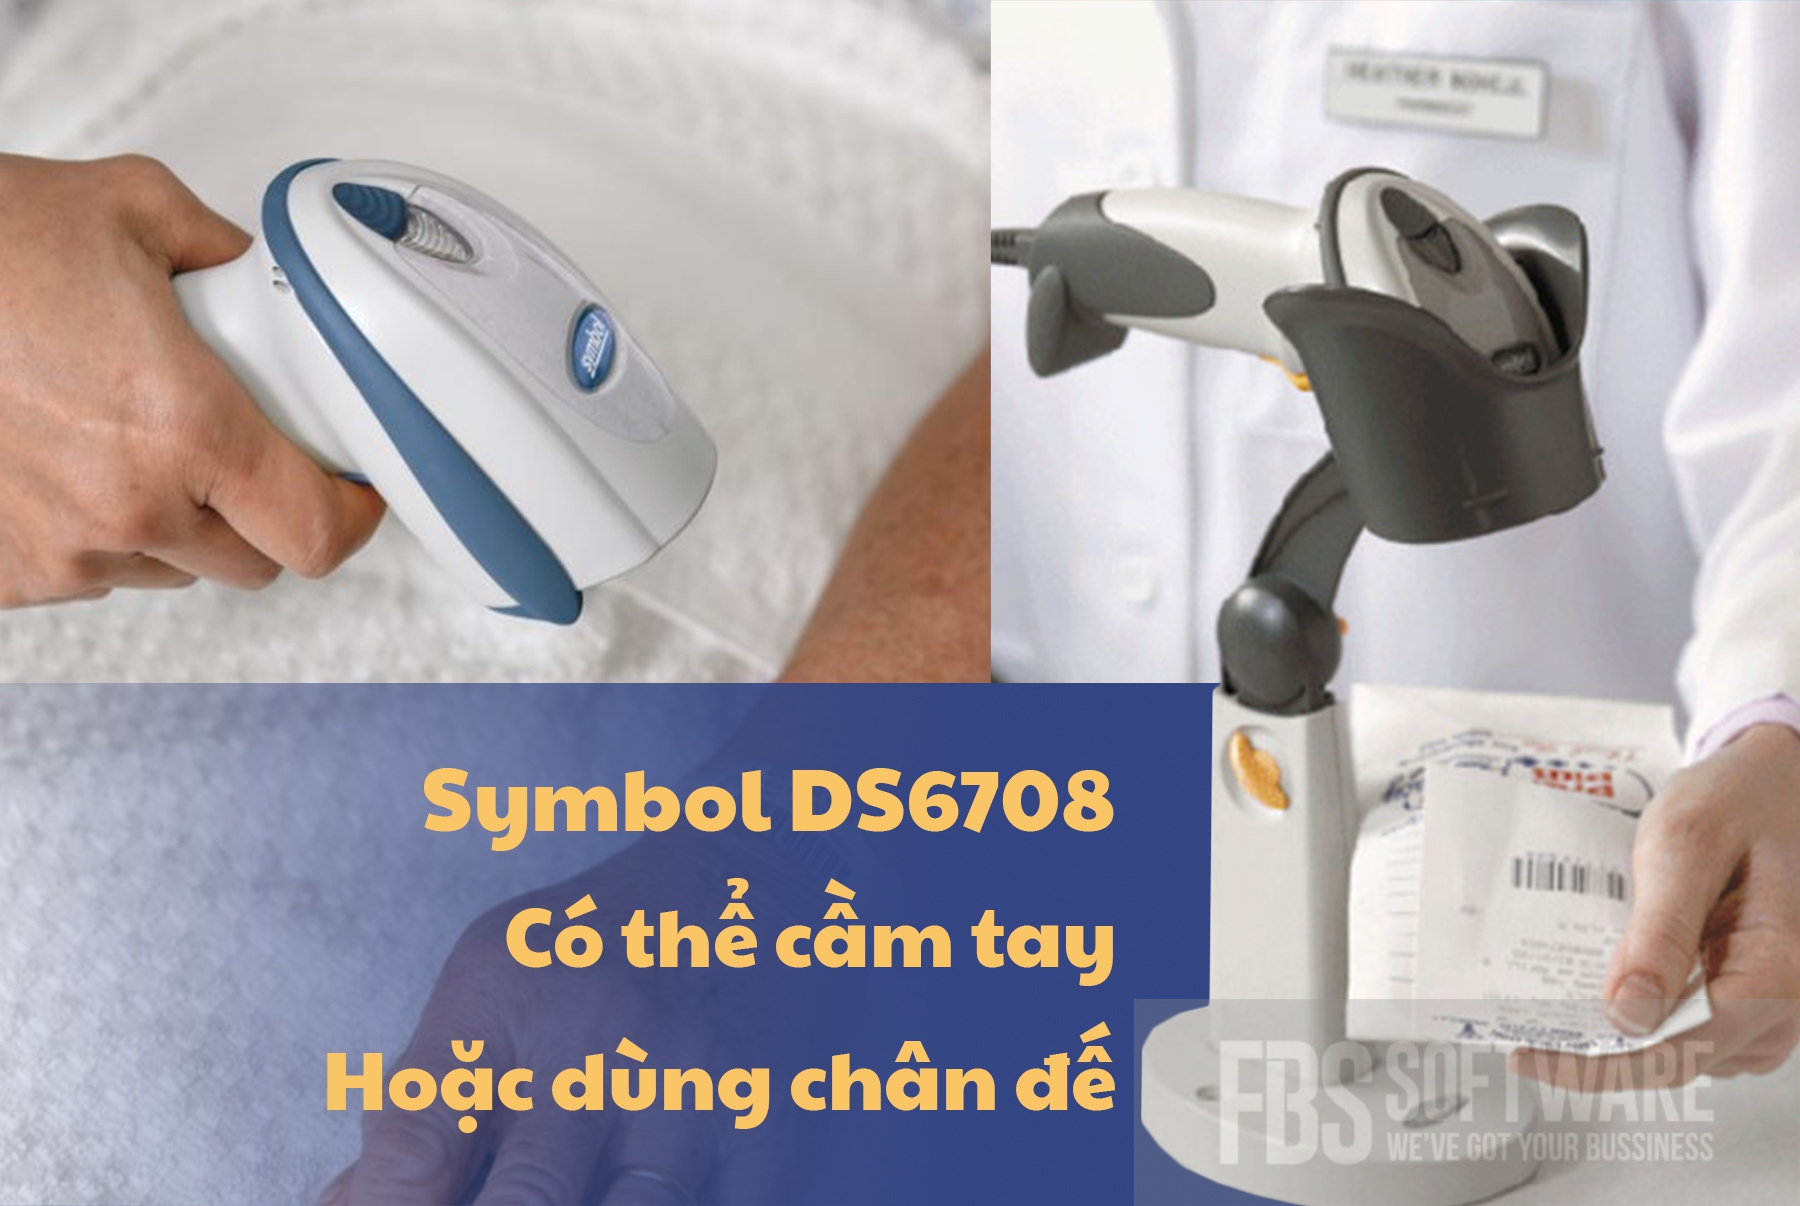 Máy quét mã vạch Symbok DS6708 cho bệnh viện